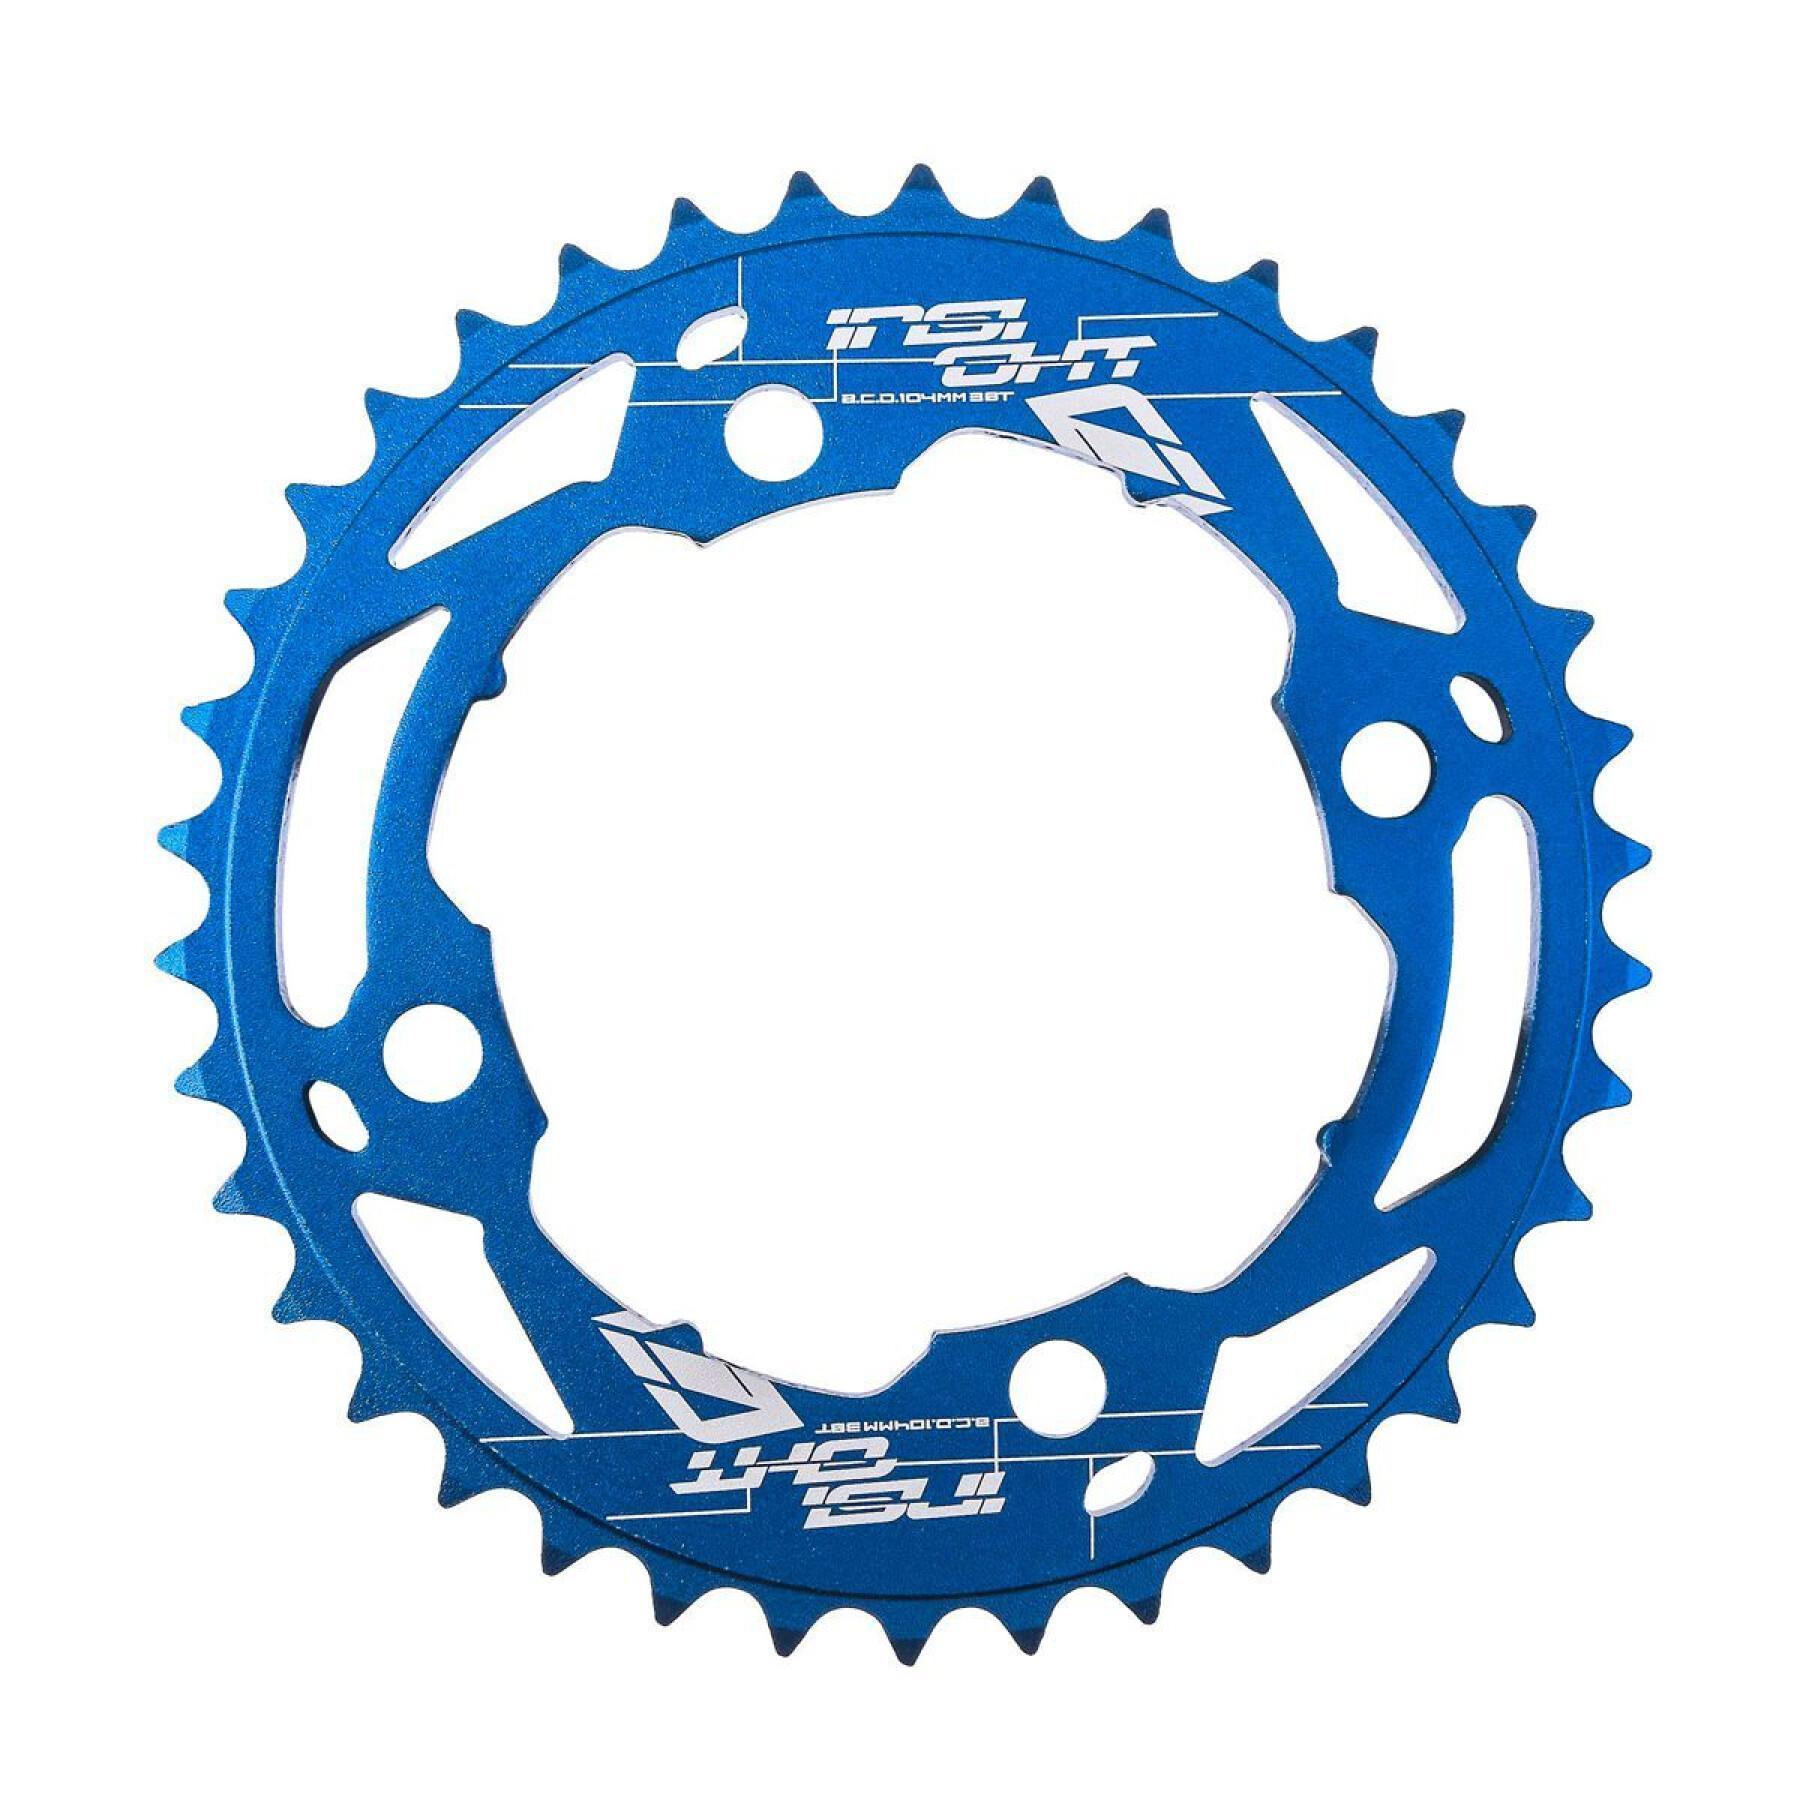 Corona della bicicletta Insight 104 mm